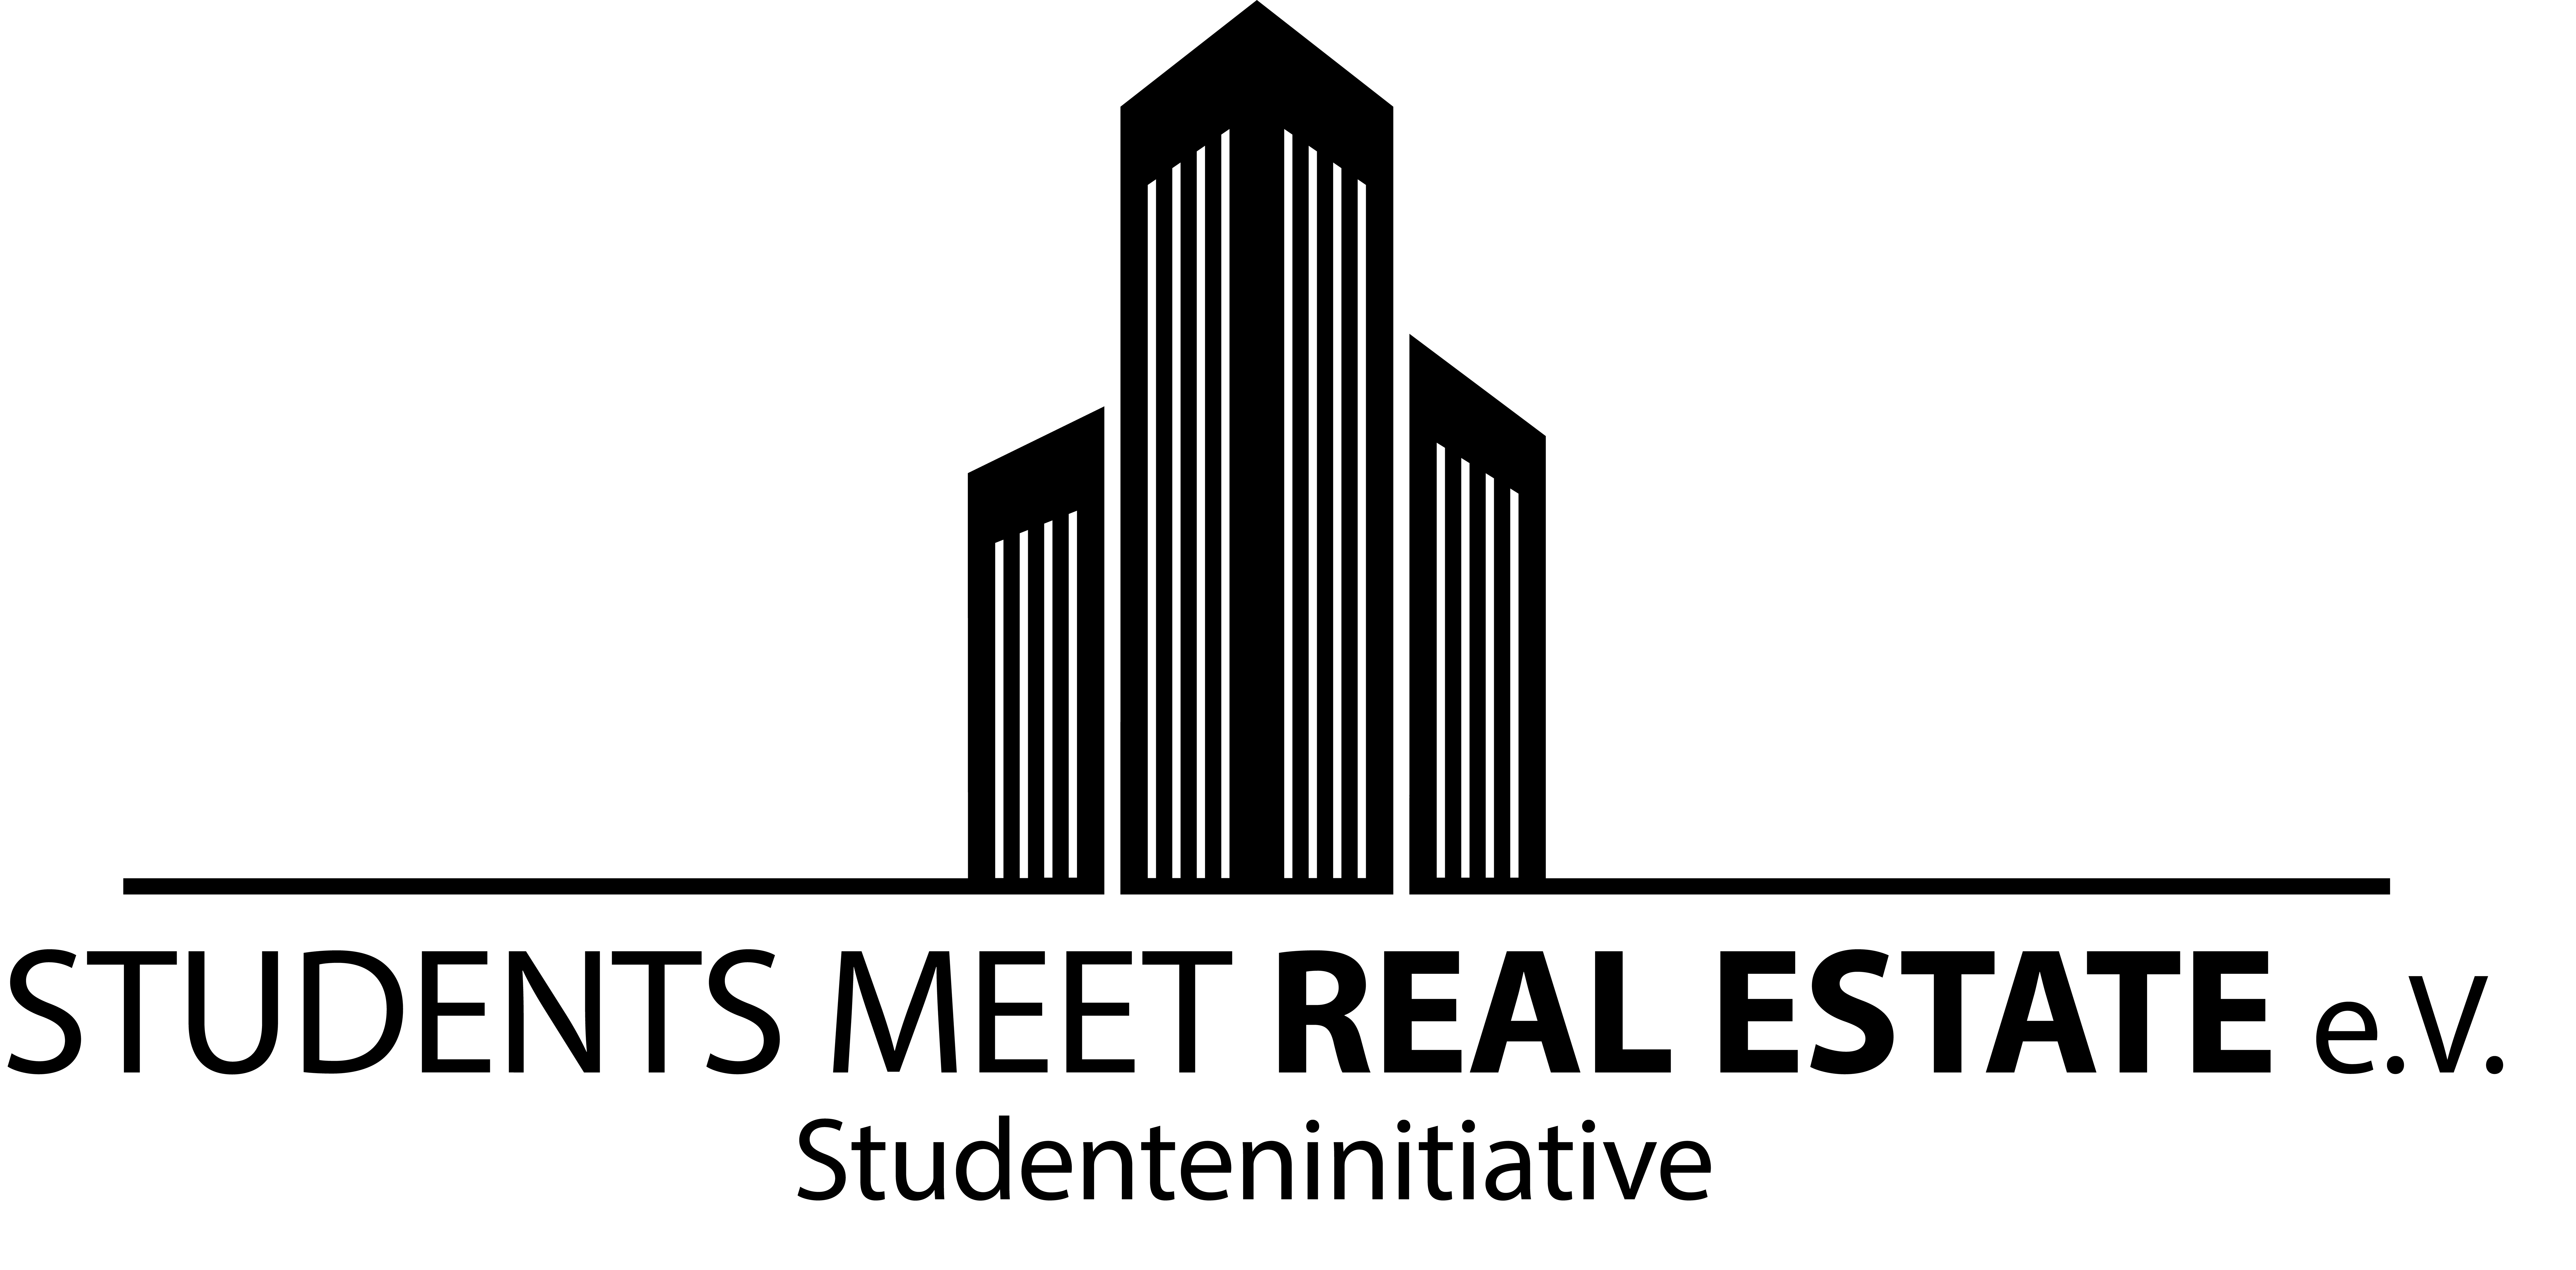 SMRE Logo